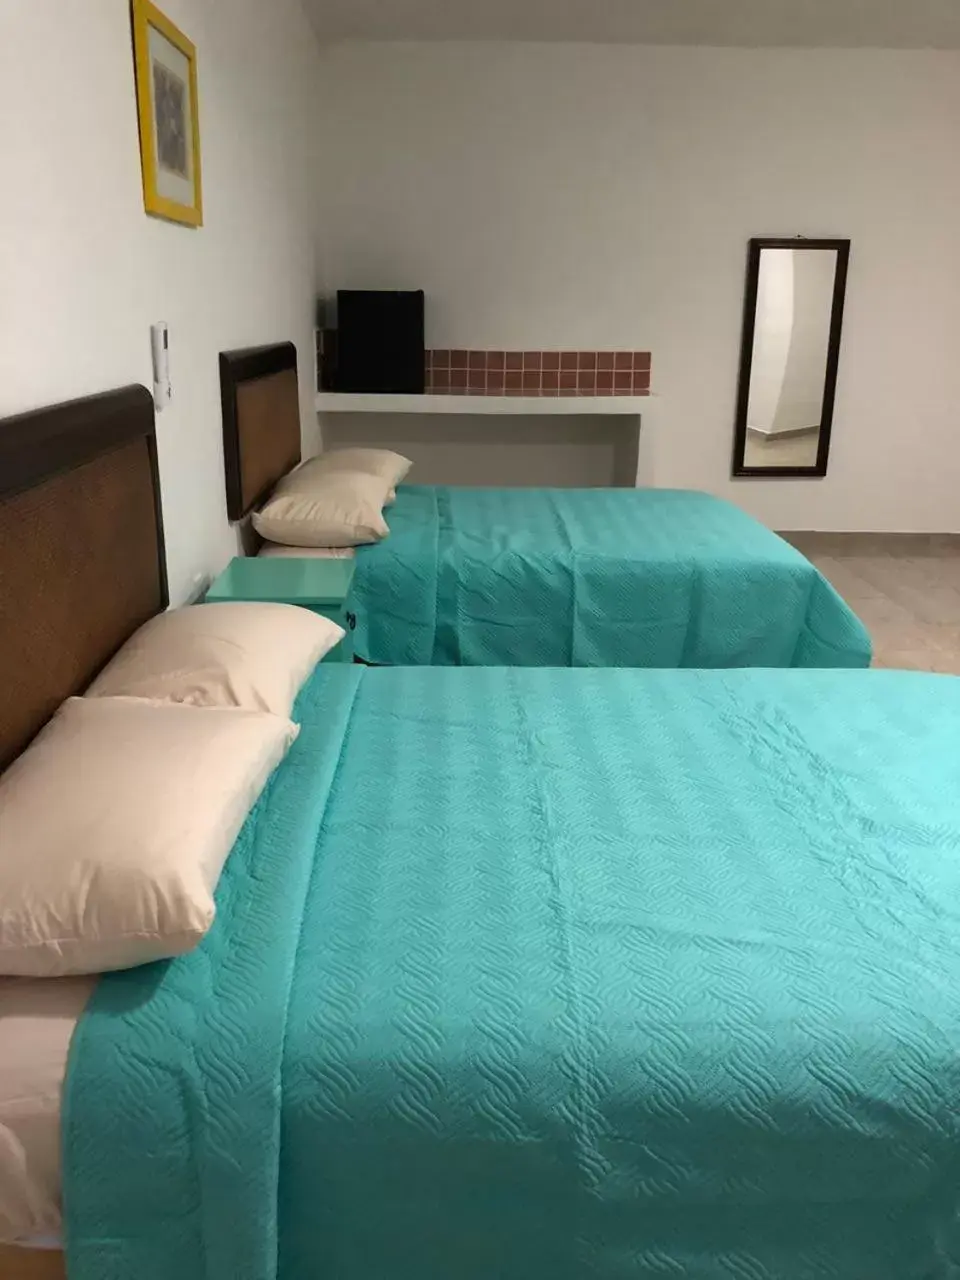 Bed in Airport Sleepy Inn